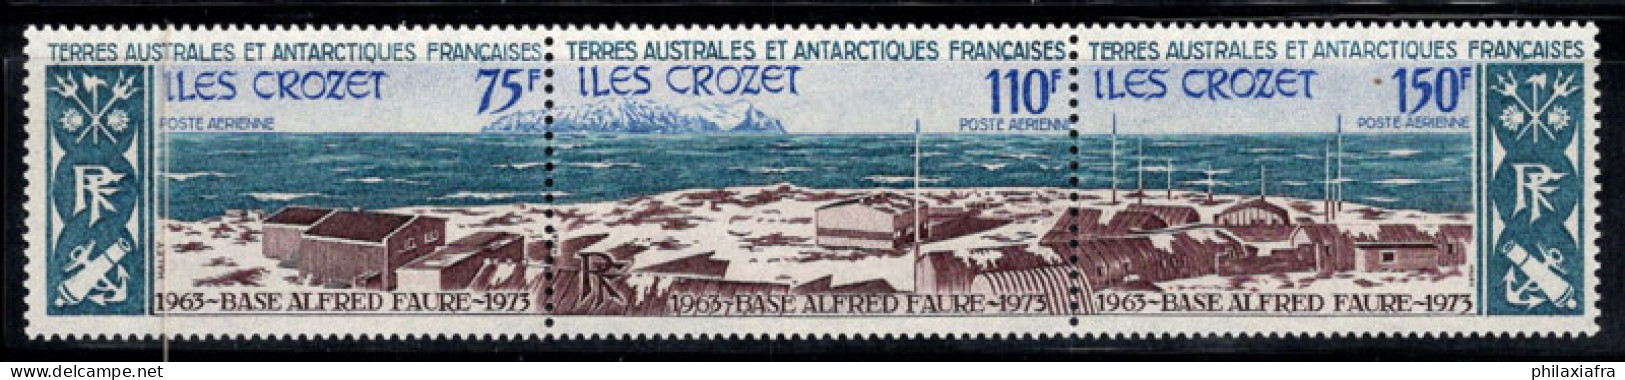 Territoire Antarctique Français TAAF 1974 Mi. 89-91 Neuf ** 100% Poste Aérienne Base Alfred Faure - Neufs